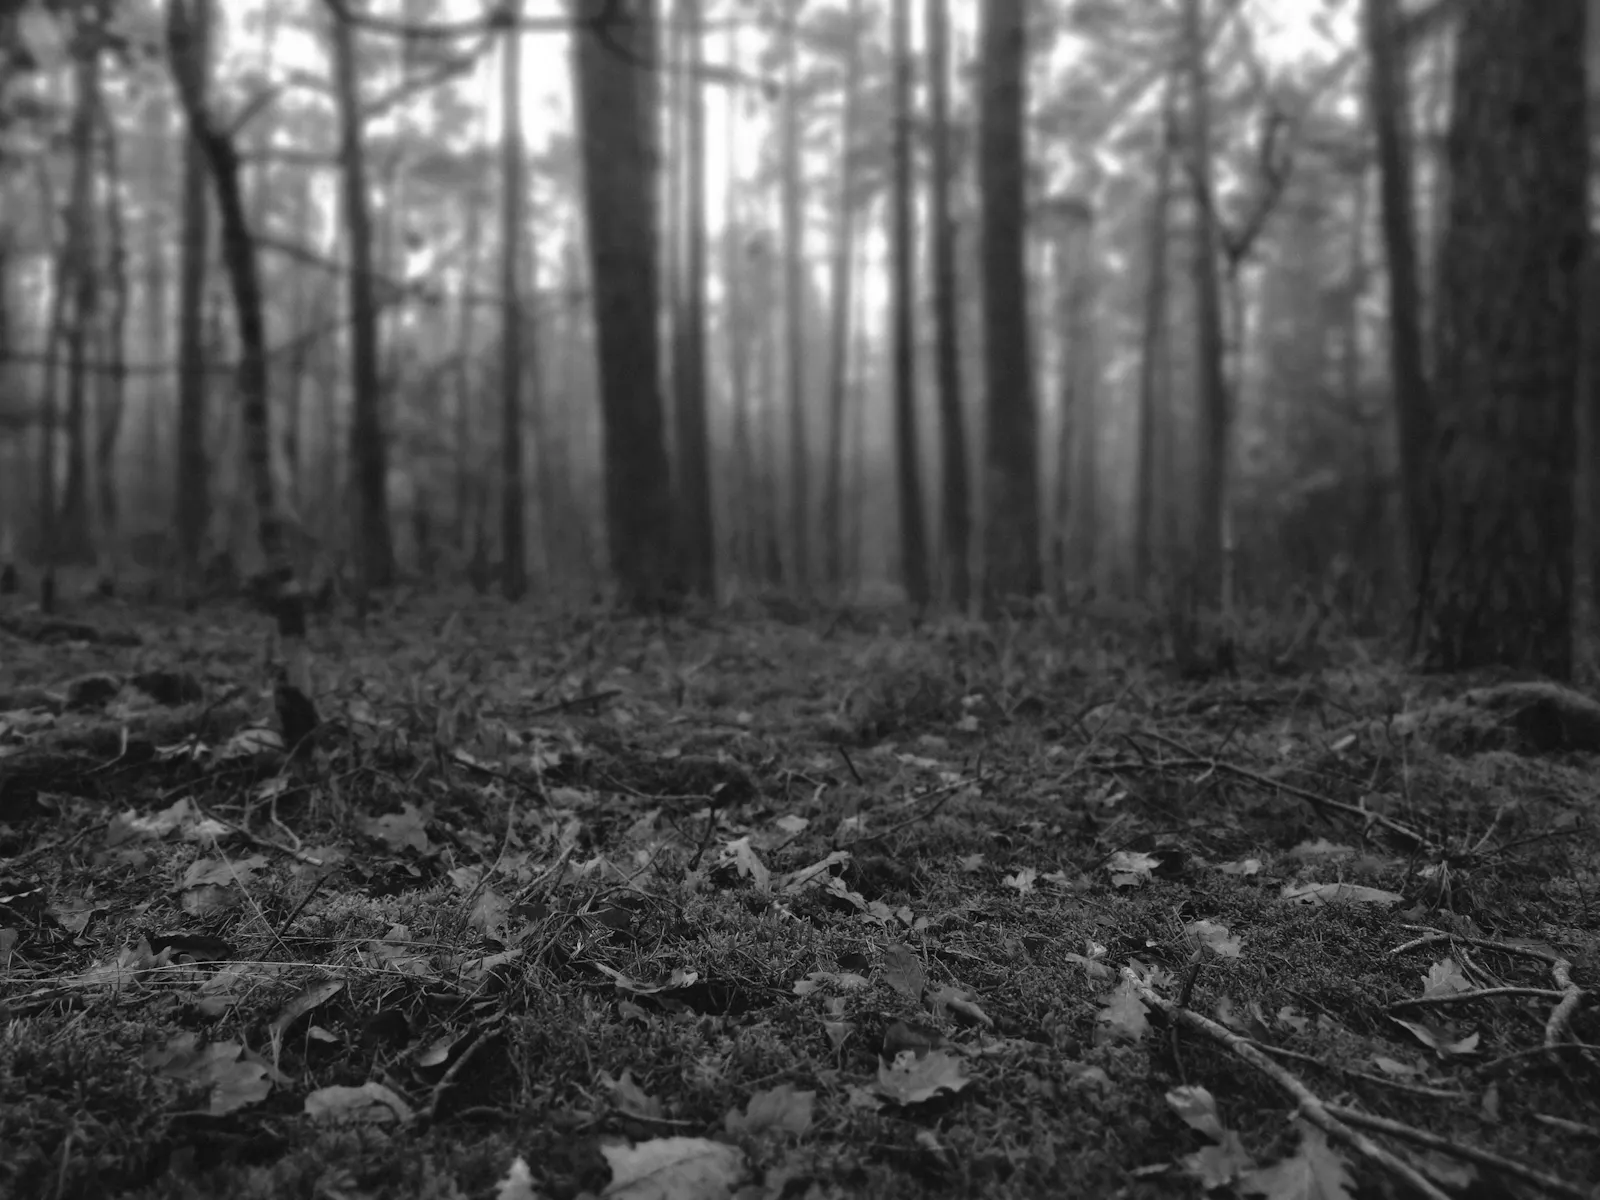 Schwarz-weiß Aufnahme kurz über dem Boden. Belaubter Waldboden und Bäume sind zu sehen.